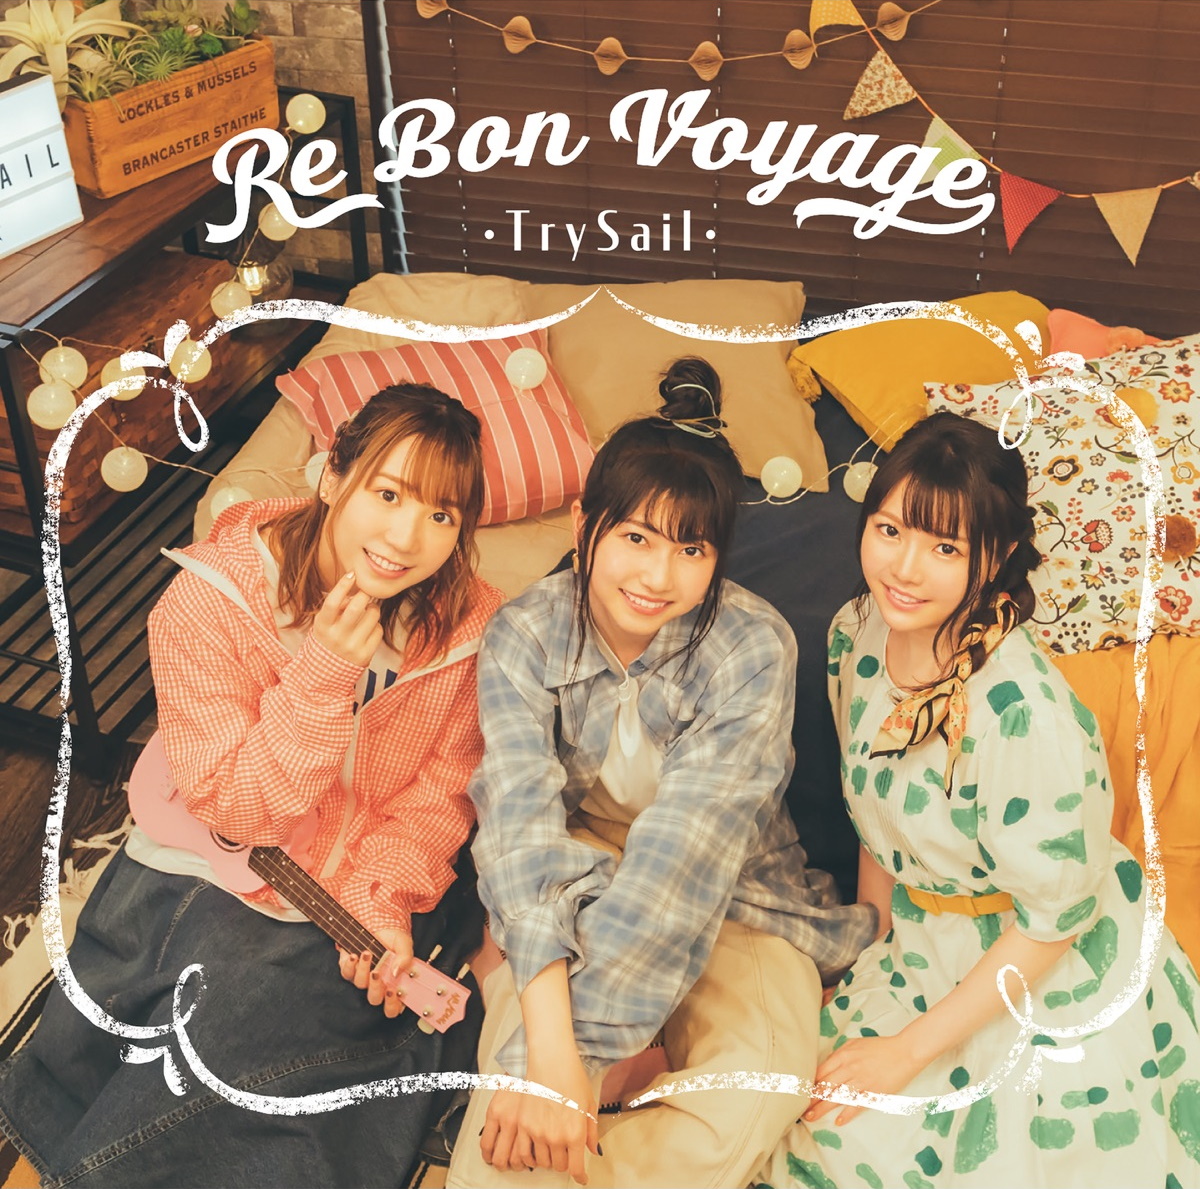 『TrySail - Re Bon Voyage 歌詞』収録の『Re Bon Voyage』ジャケット